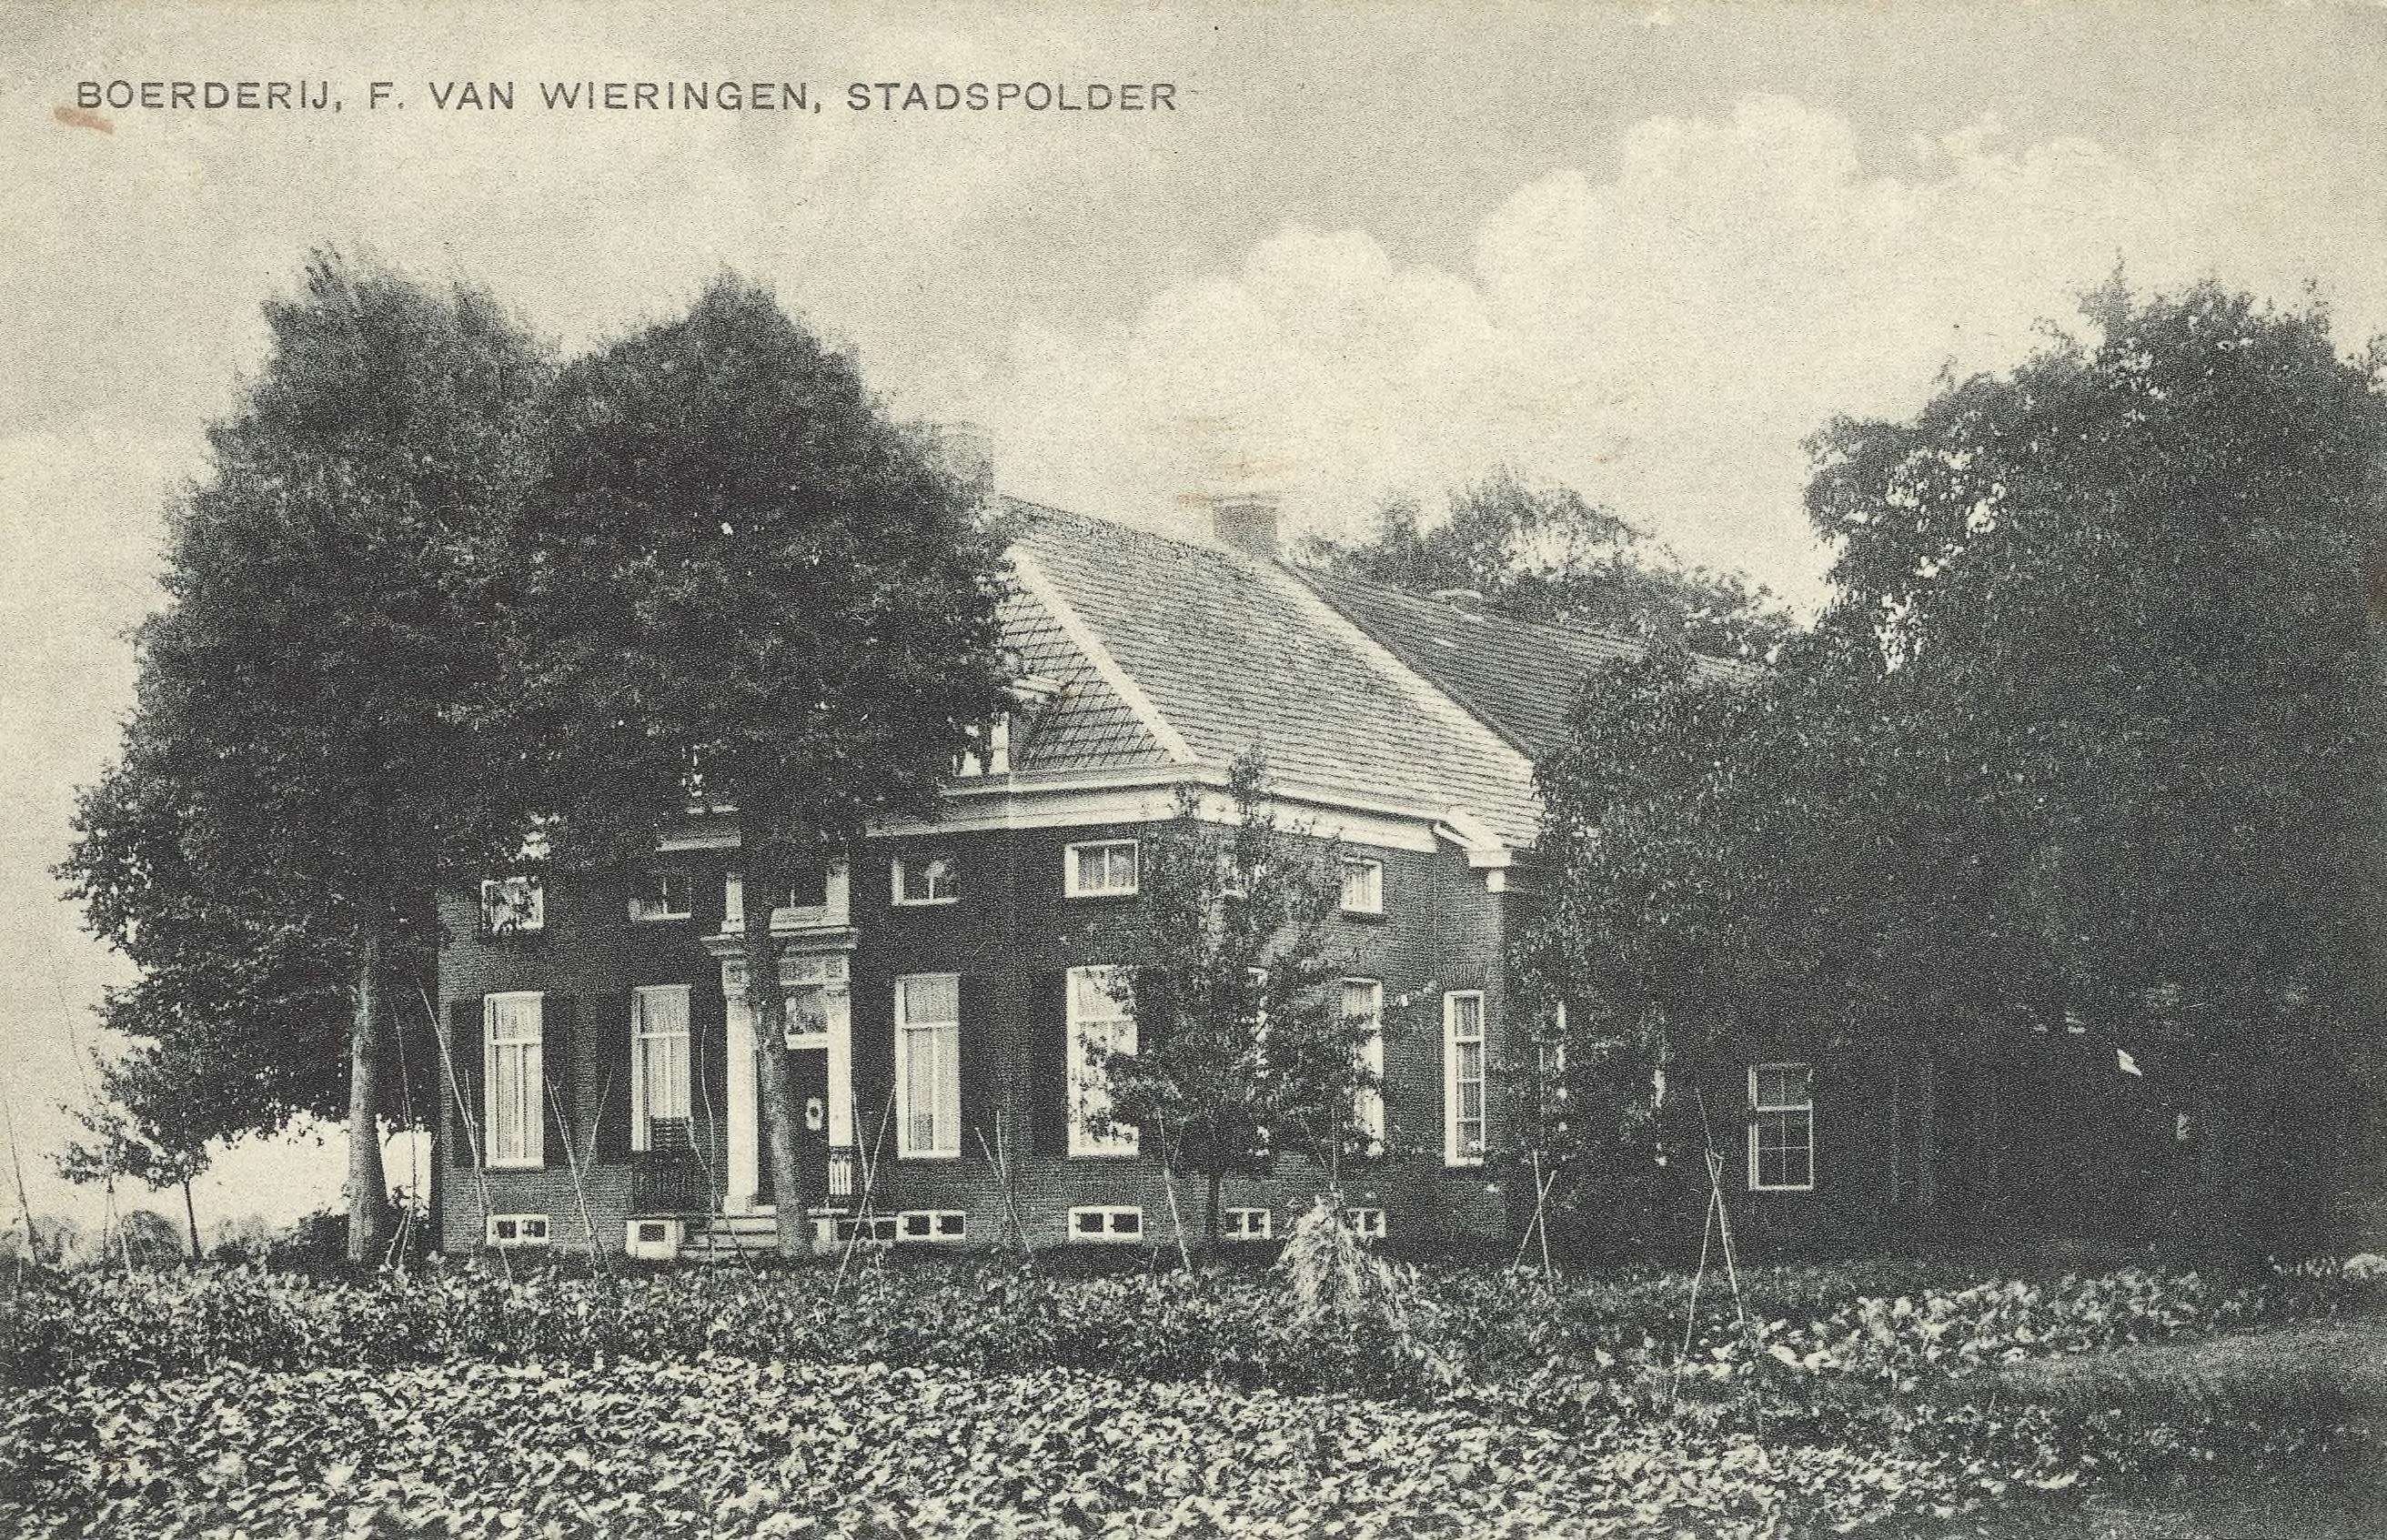 De boerderij van F. van Wieringen in de stadspolder.